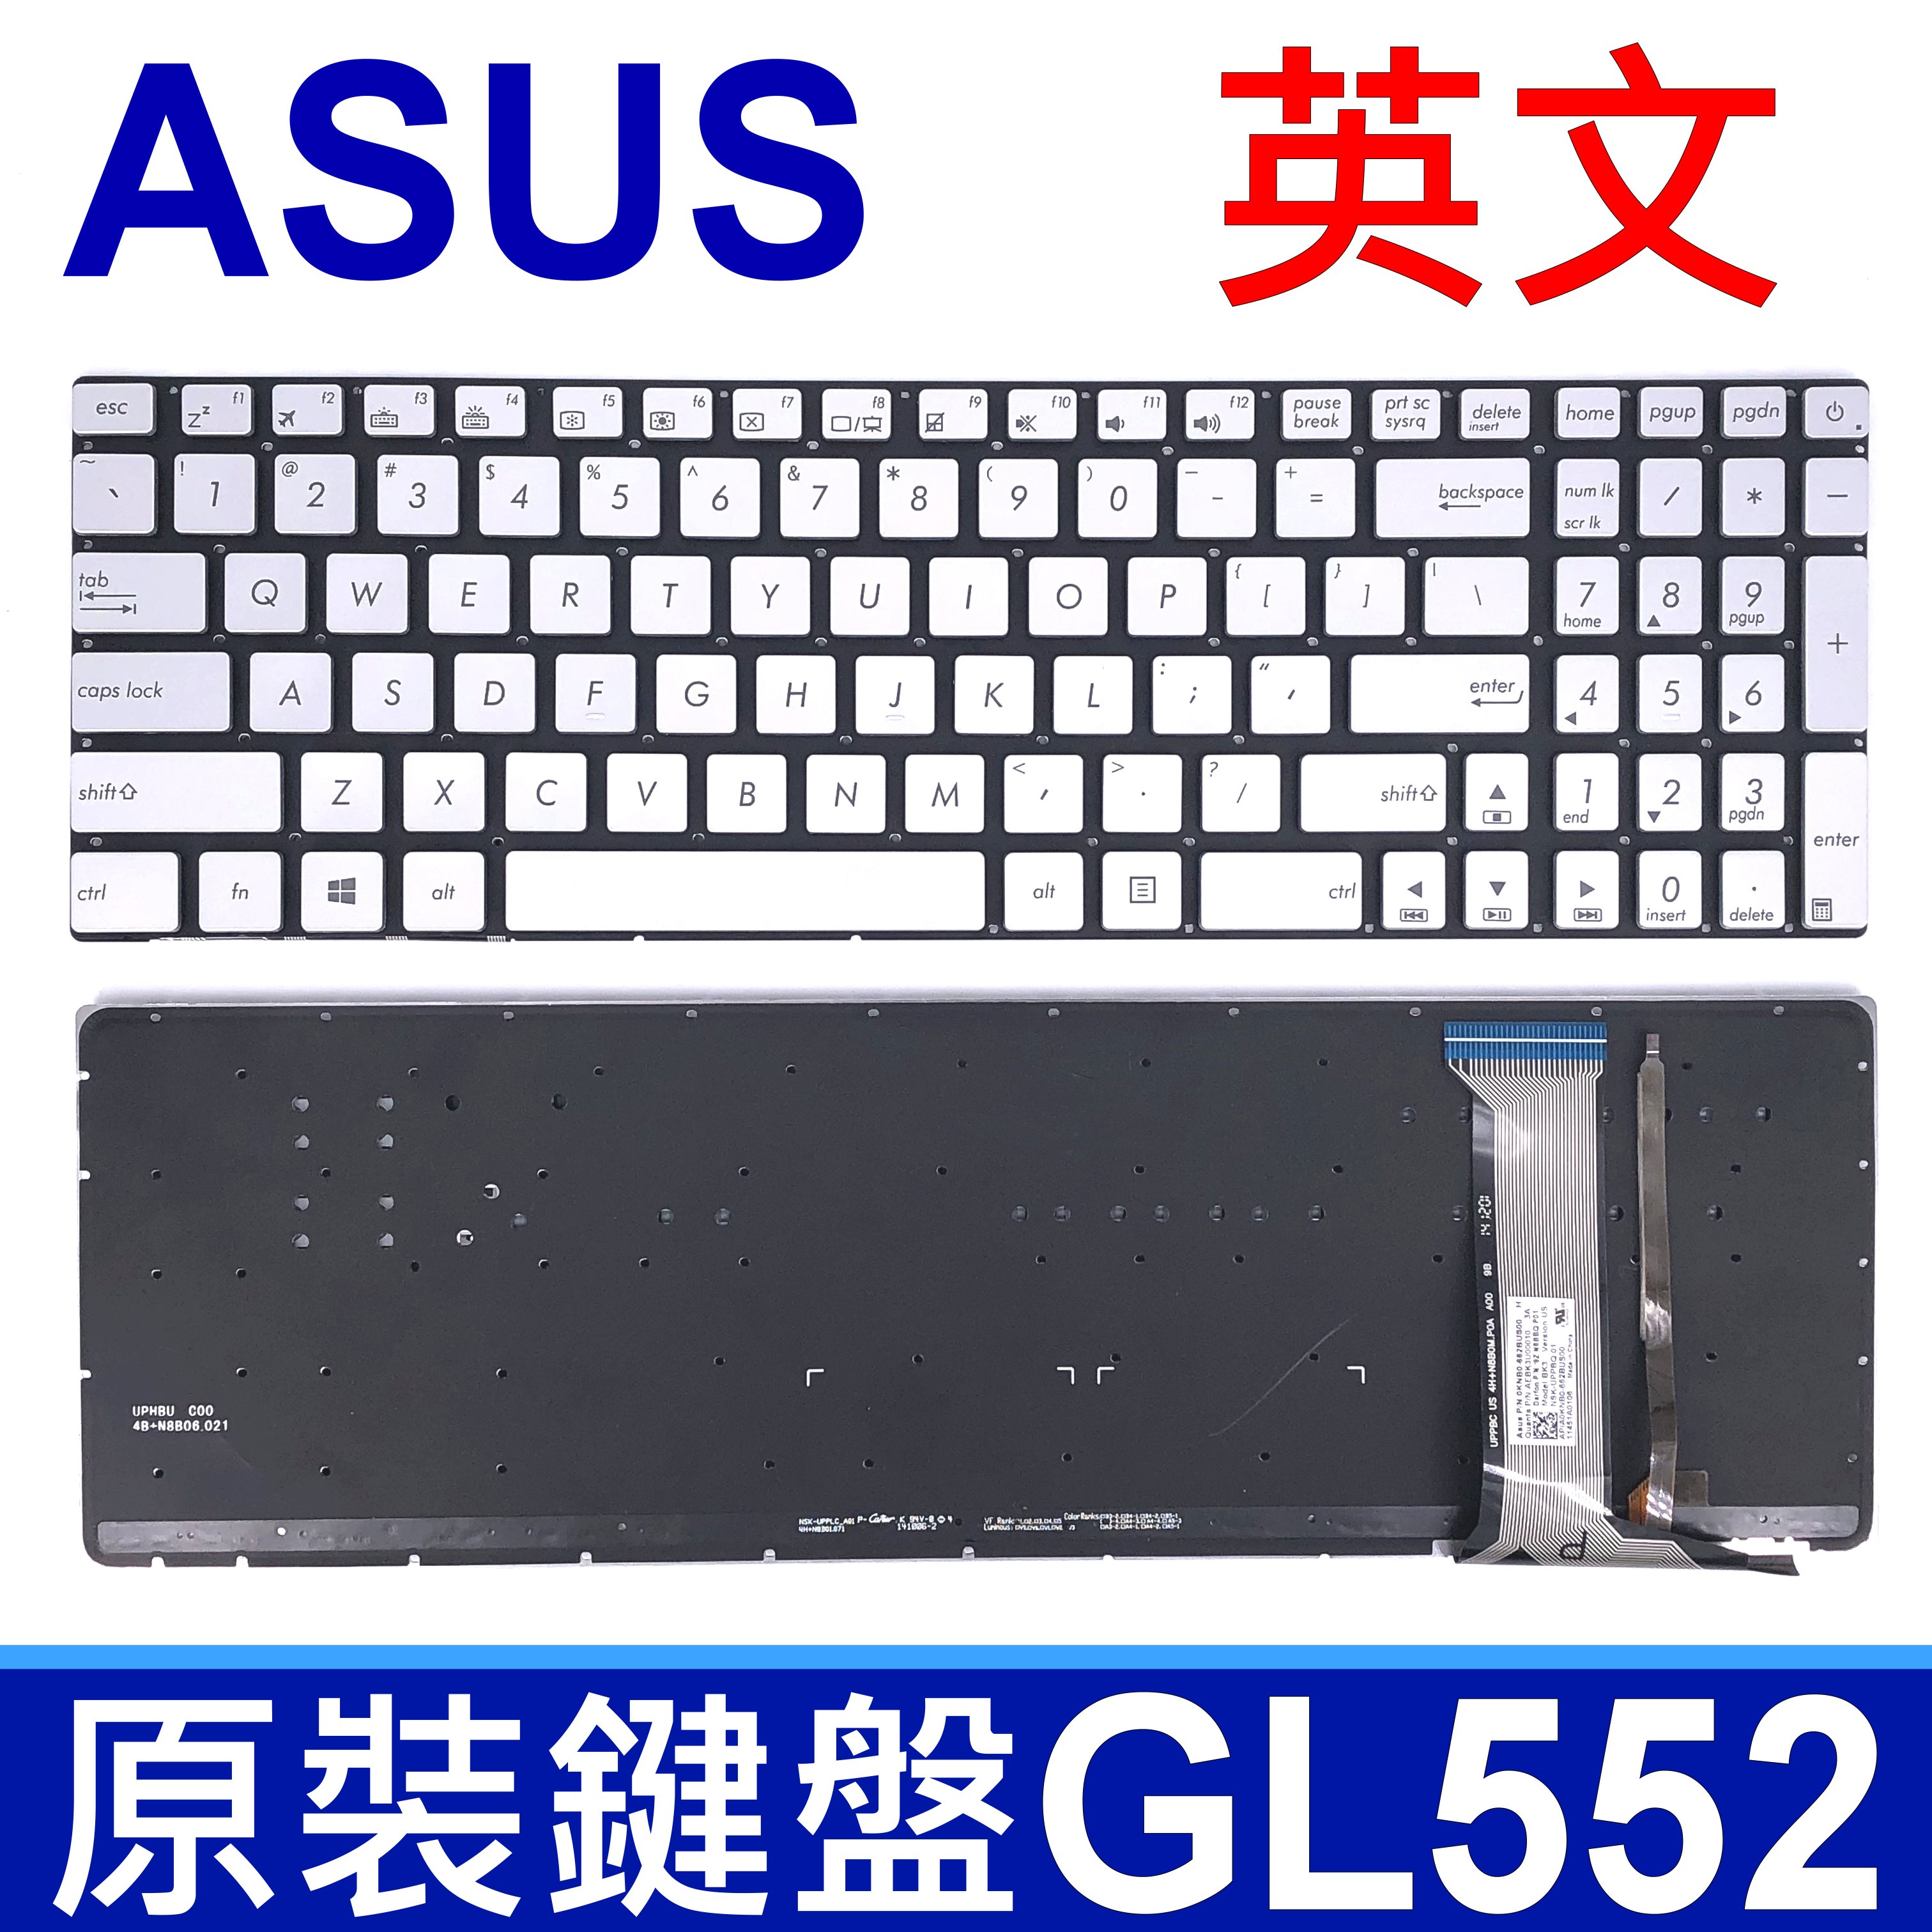 華碩 ASUS GL552 背光 英文款 鍵盤 GL552J GL552V GL552VW GL742 GL742VW GL752 GL752V GL752VL GL752VW GL752ZX GL771 GL771JM GL771JW ZX70 ZX70VW ZX50 ZX50J ZX50JX ZX50VW V143962BS1